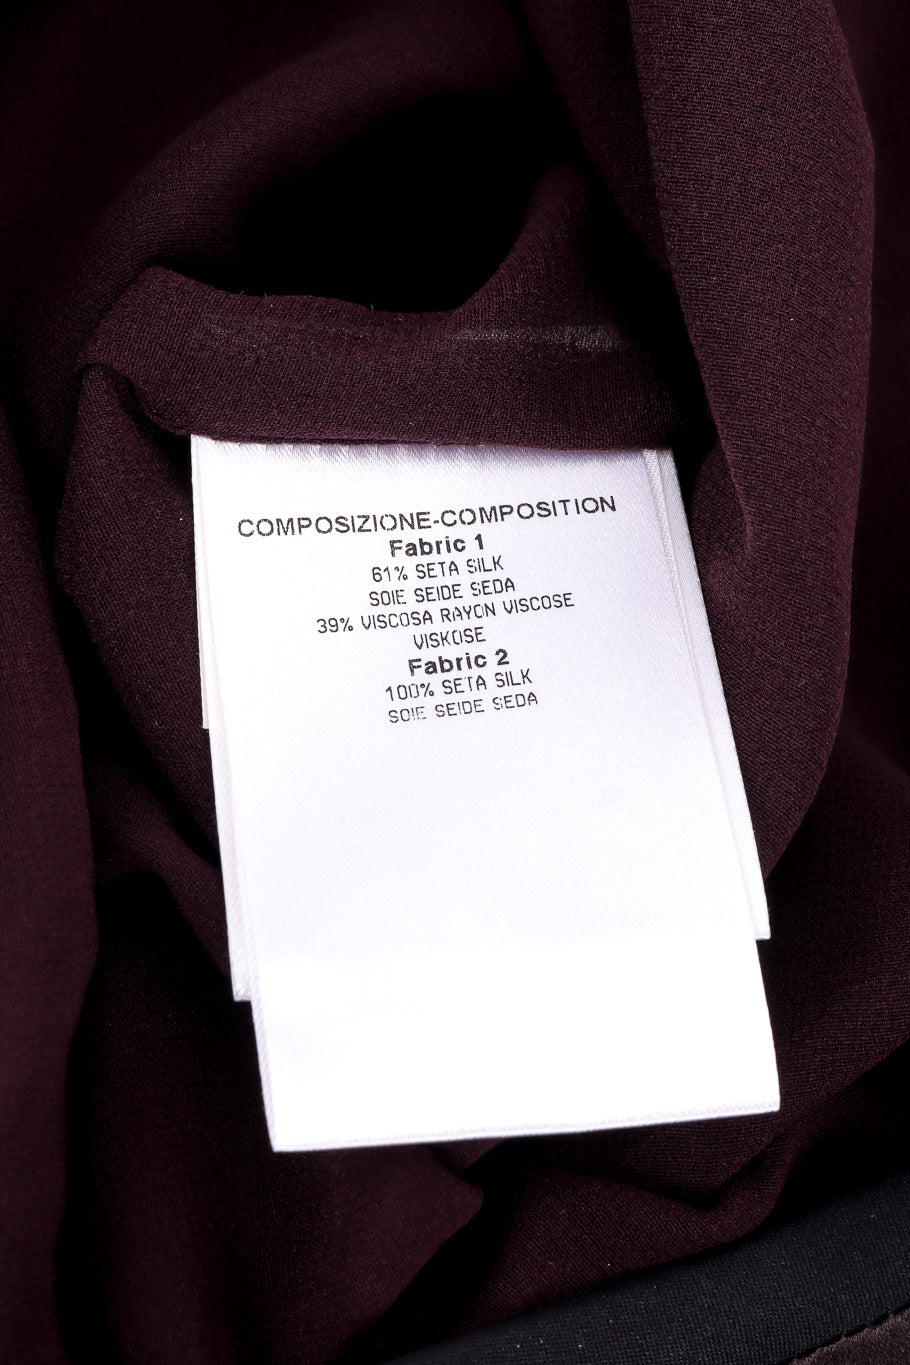 Gucci Velvet Burnout Wrap Skirt fabric content label closeup @Recessla